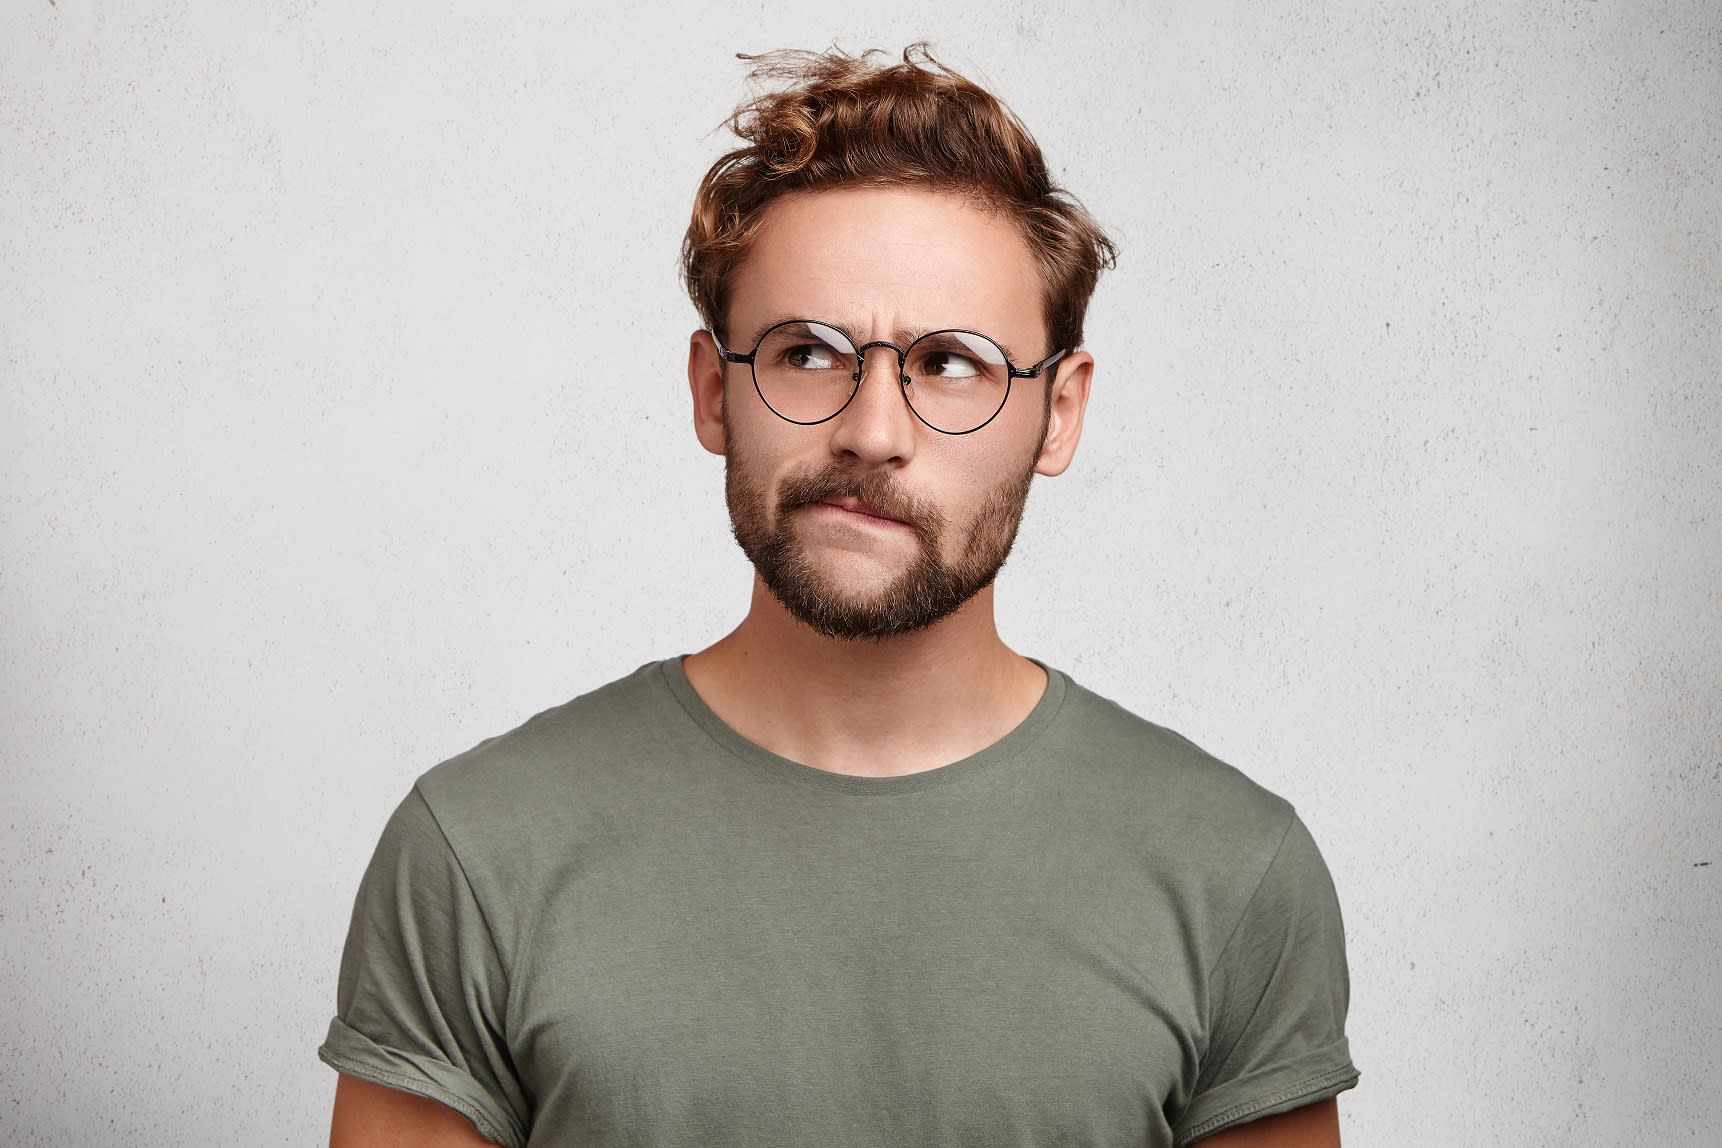 Homme portant des lunettes pensant aux soins postopératoires après sa greffe de cheveux